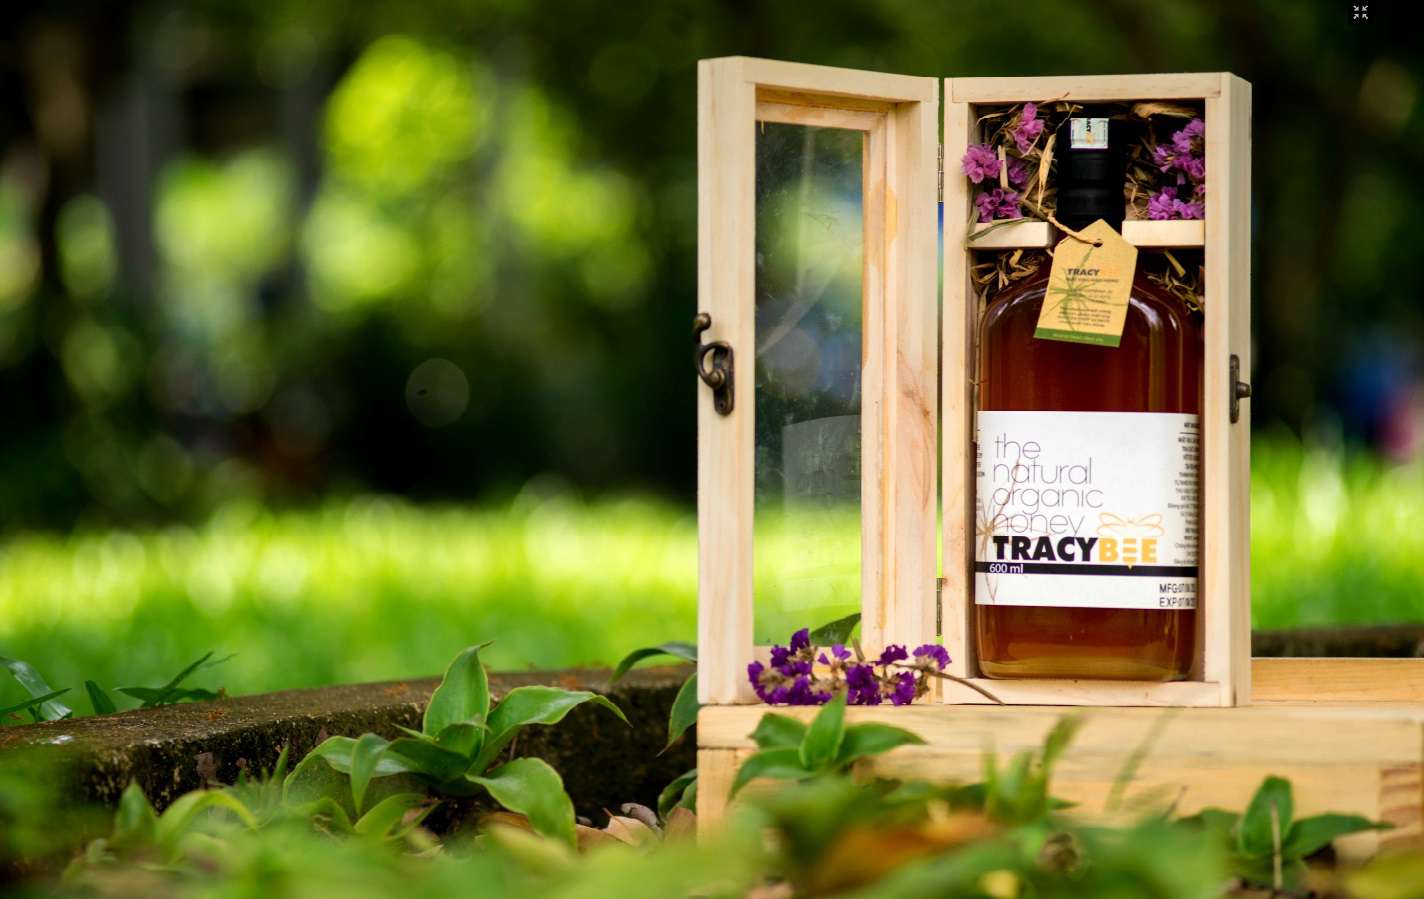 Mật ong Tracy Bee 600ml 1 chai đựng trong hộp gỗ thông sang trọng